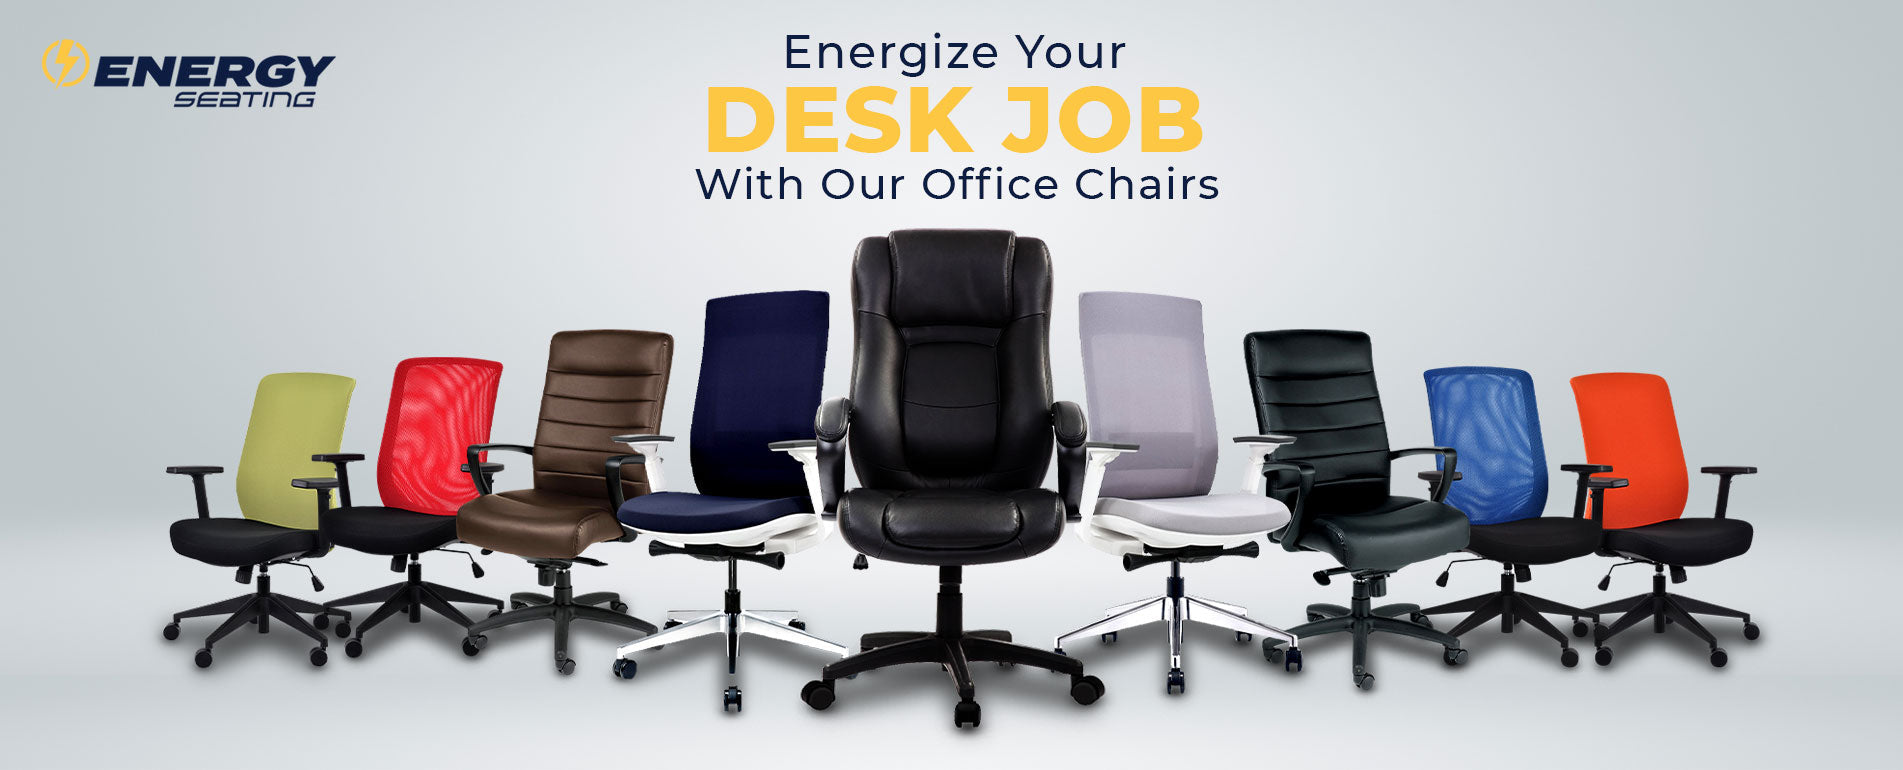 Energize Your Desk Job